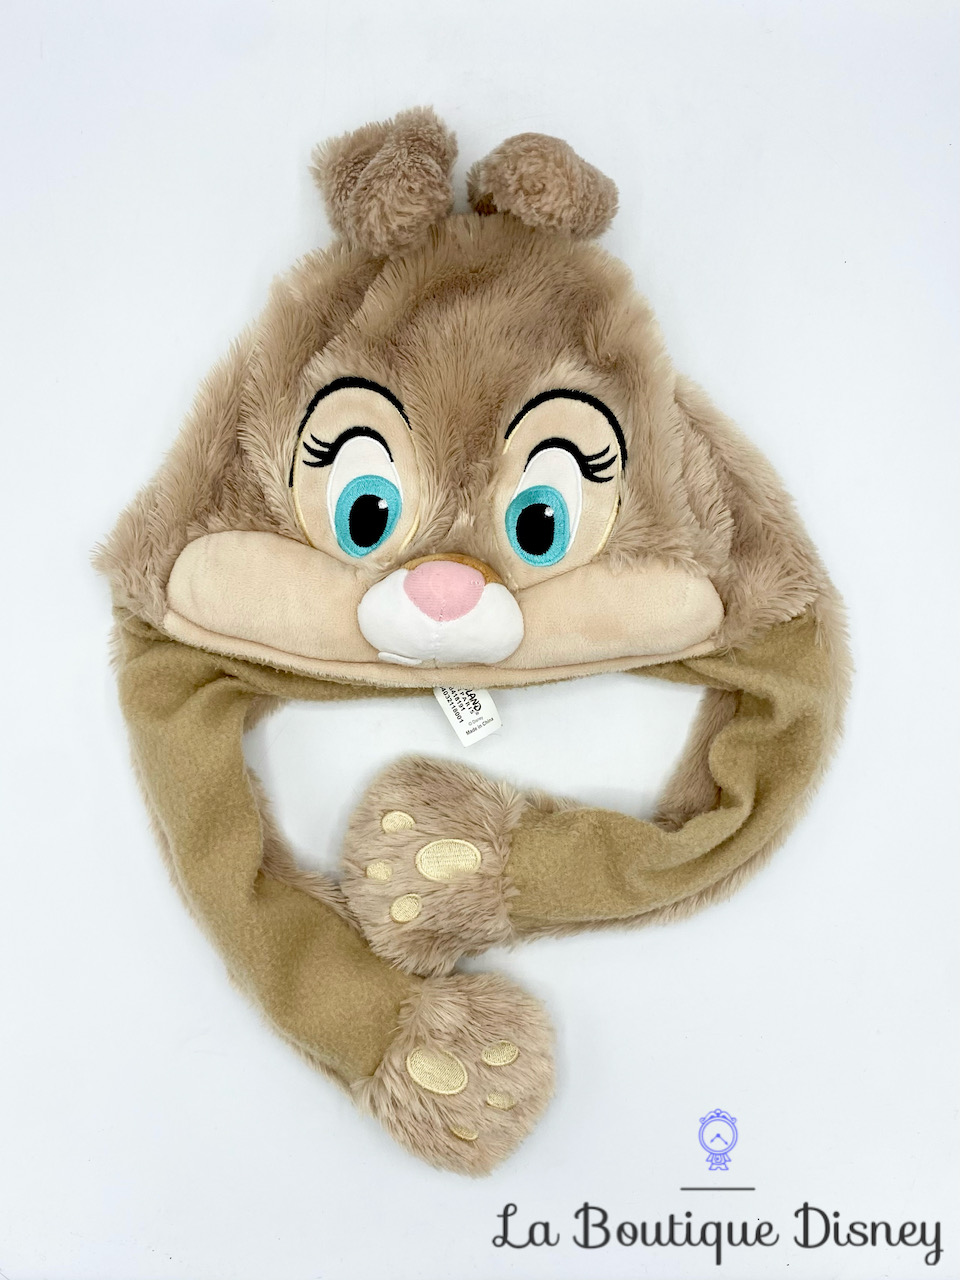 Acheter Bonnet Oreille qui Bouge Disney | Bonnet Stitch Oreille qui Bouge  pas cher : Adulte & Enfant (Homme & Femme)